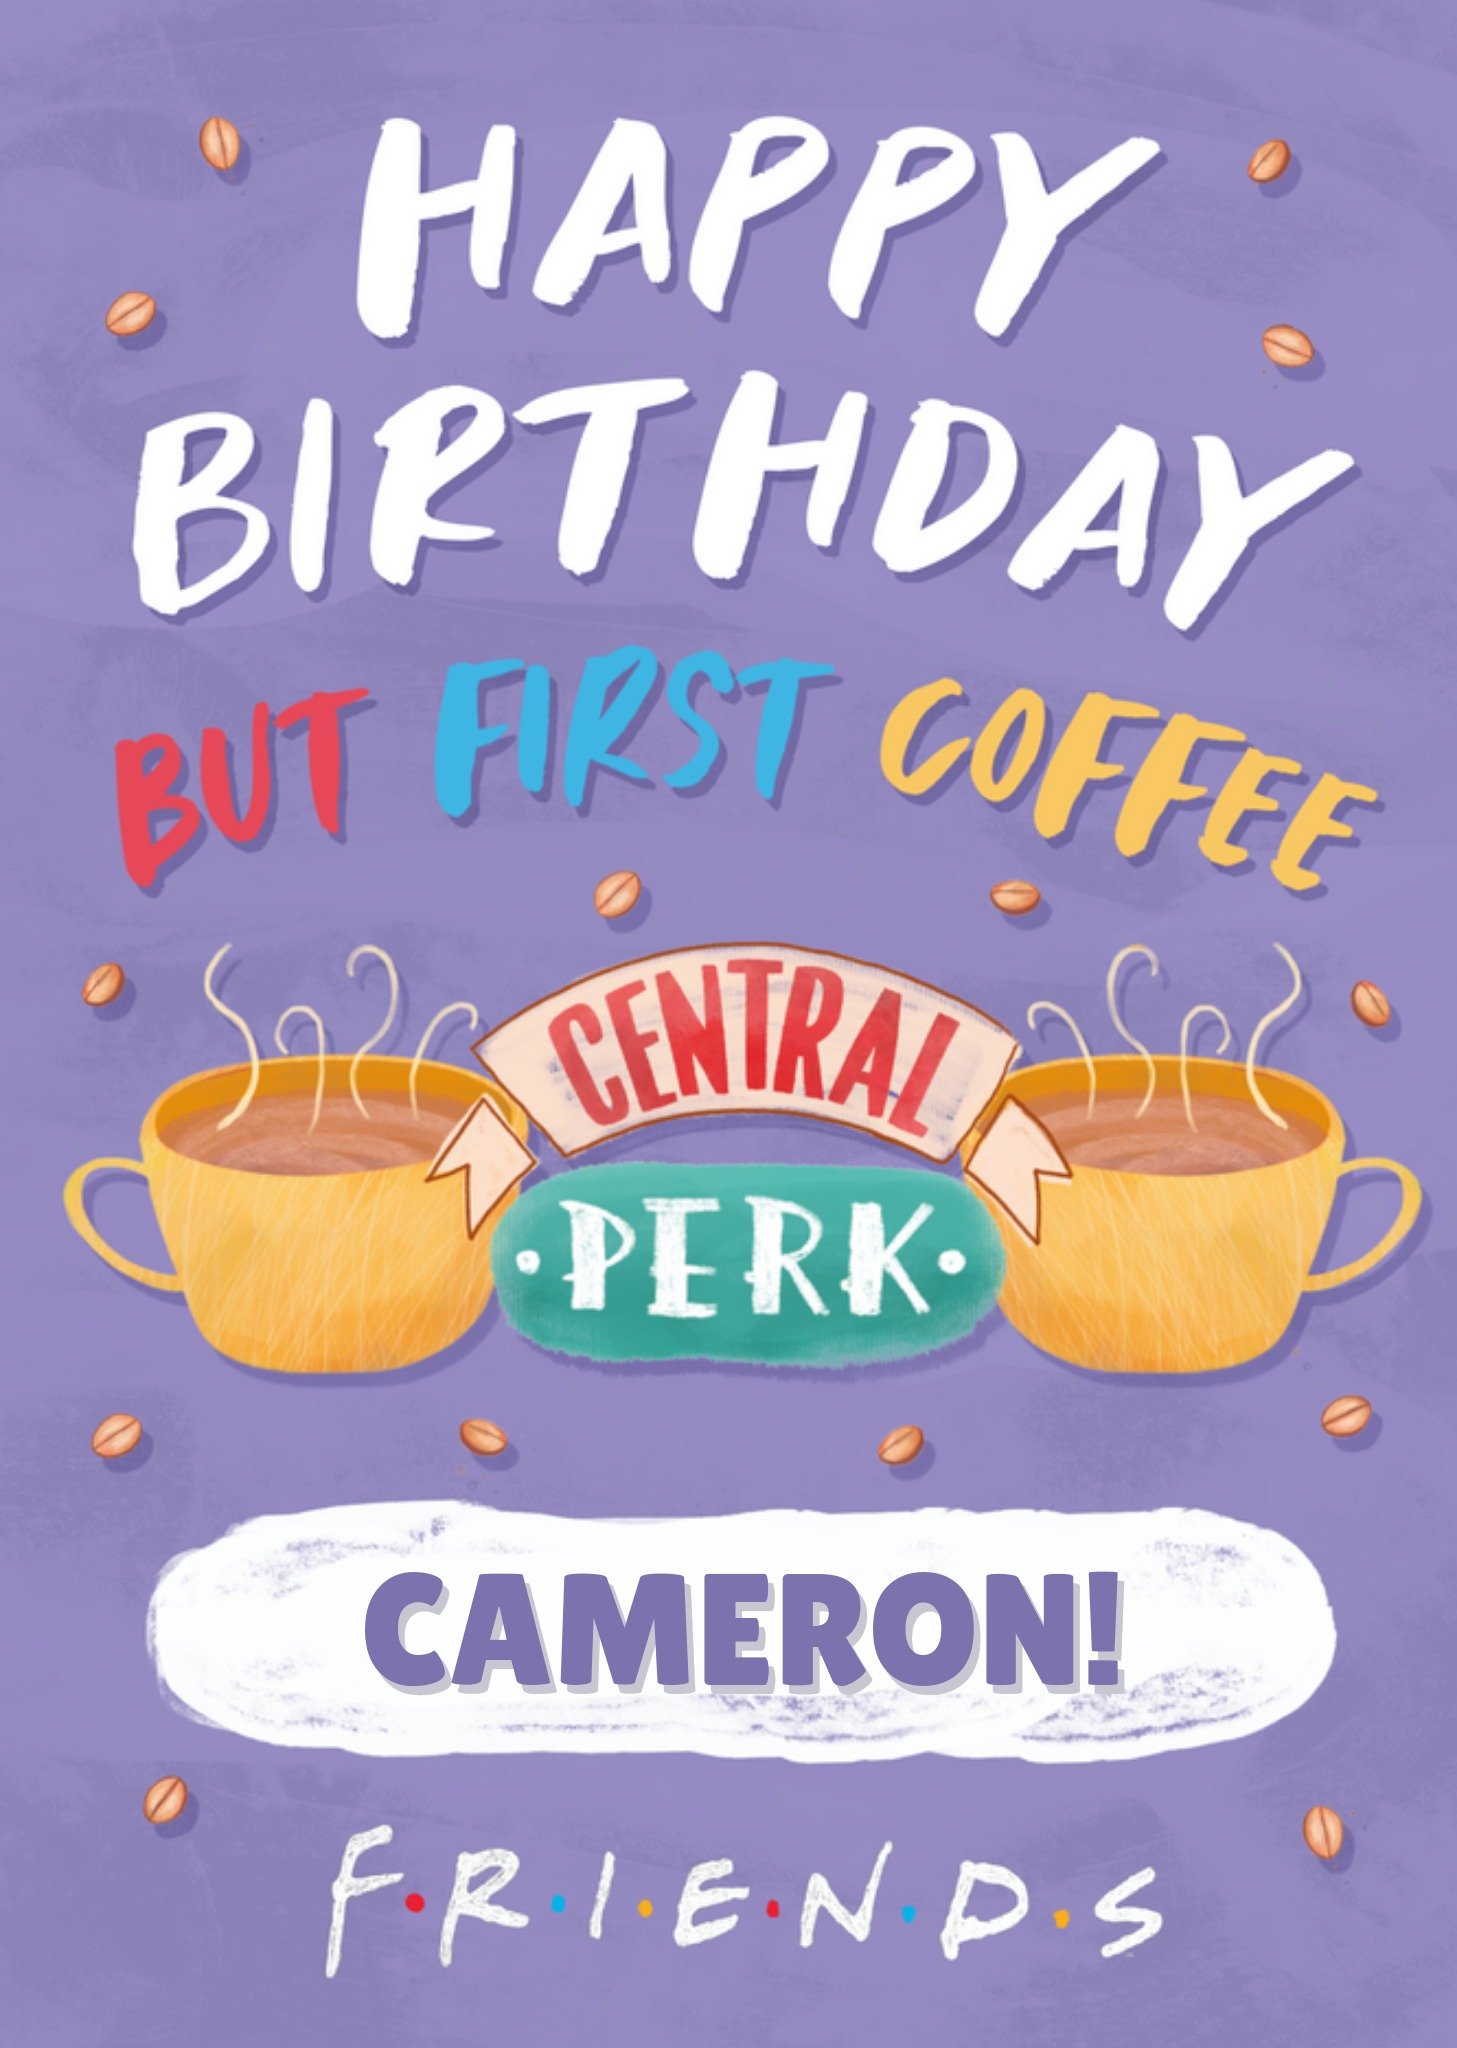 Friends - Verjaardagskaart - Central Perk - Met naam